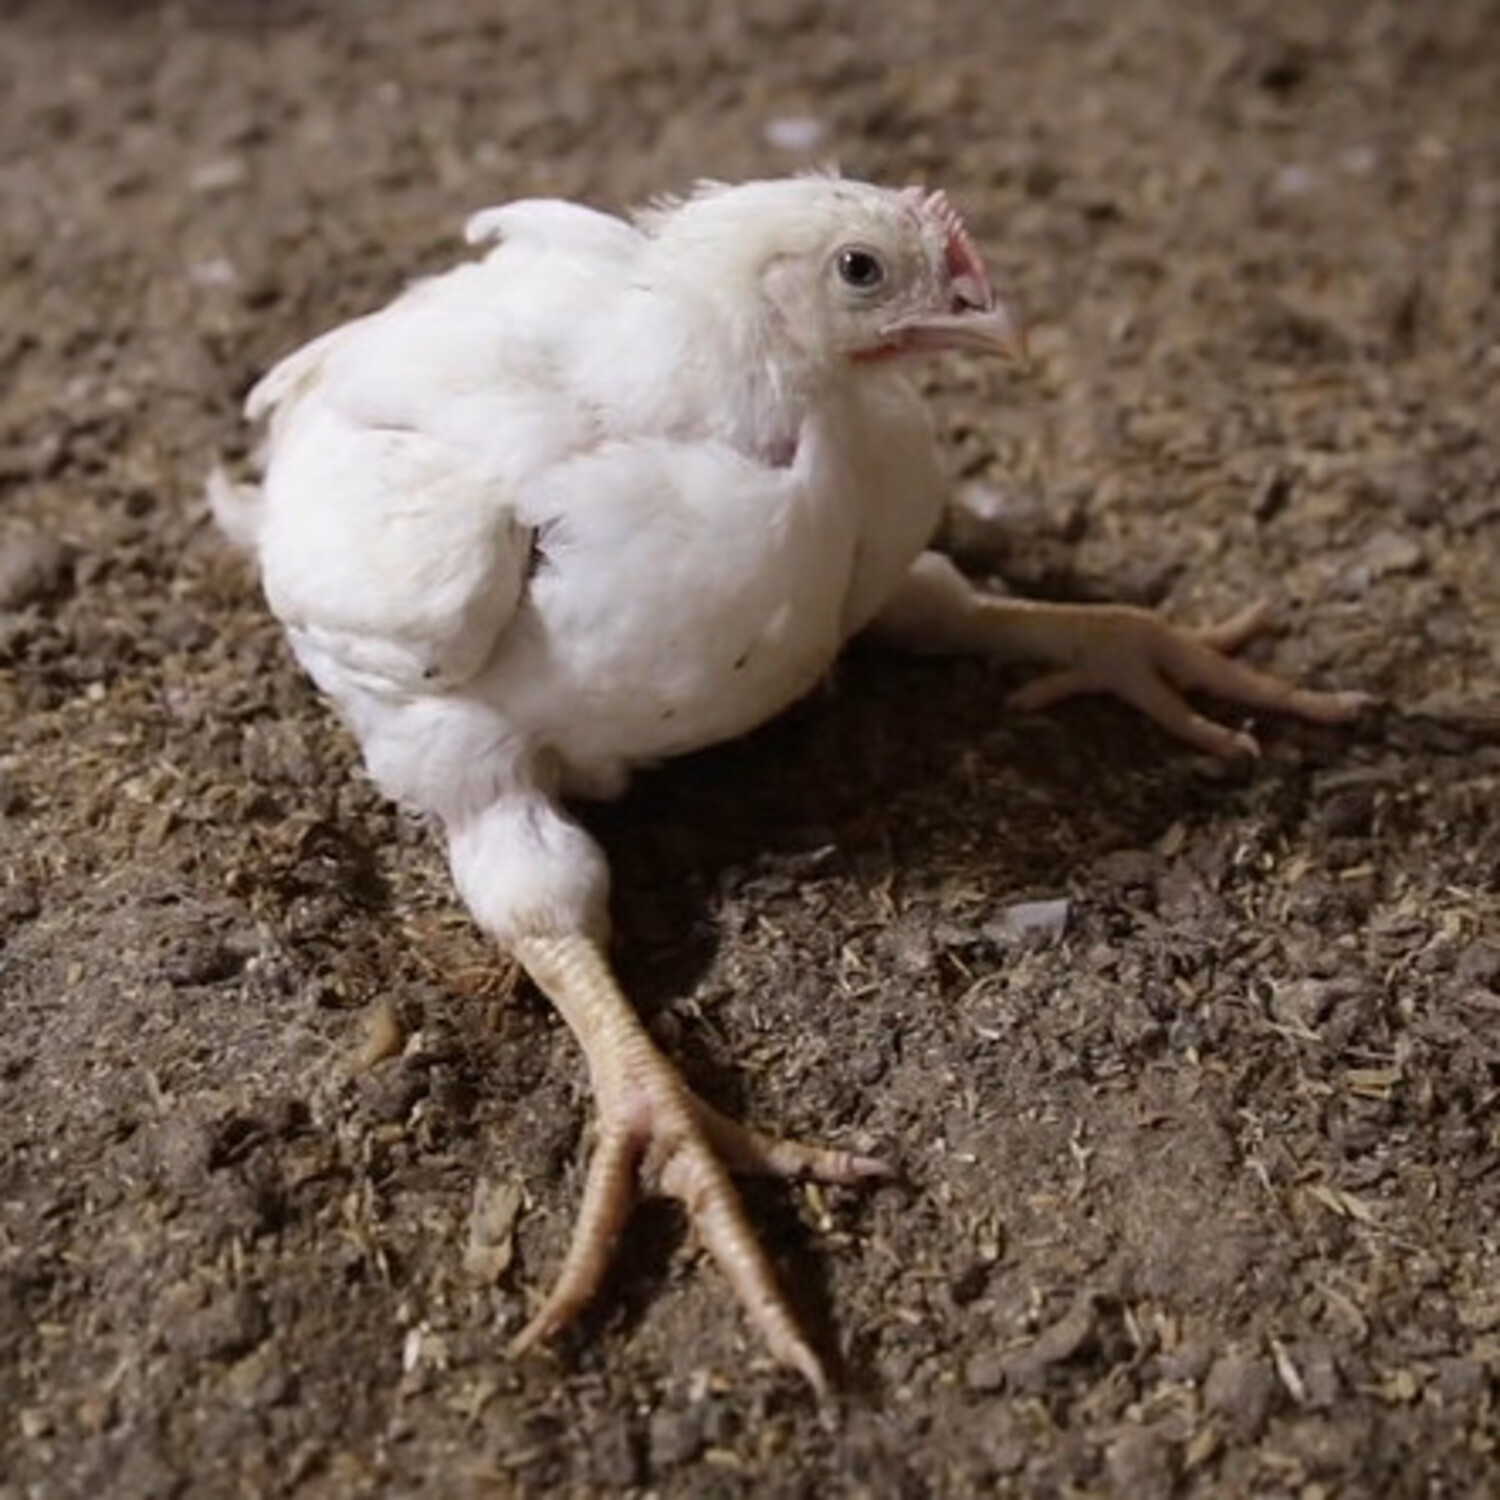 Ein weiterer Schritt in Europa gegen Zucht auf schnelles Wachstum bei Hühnern